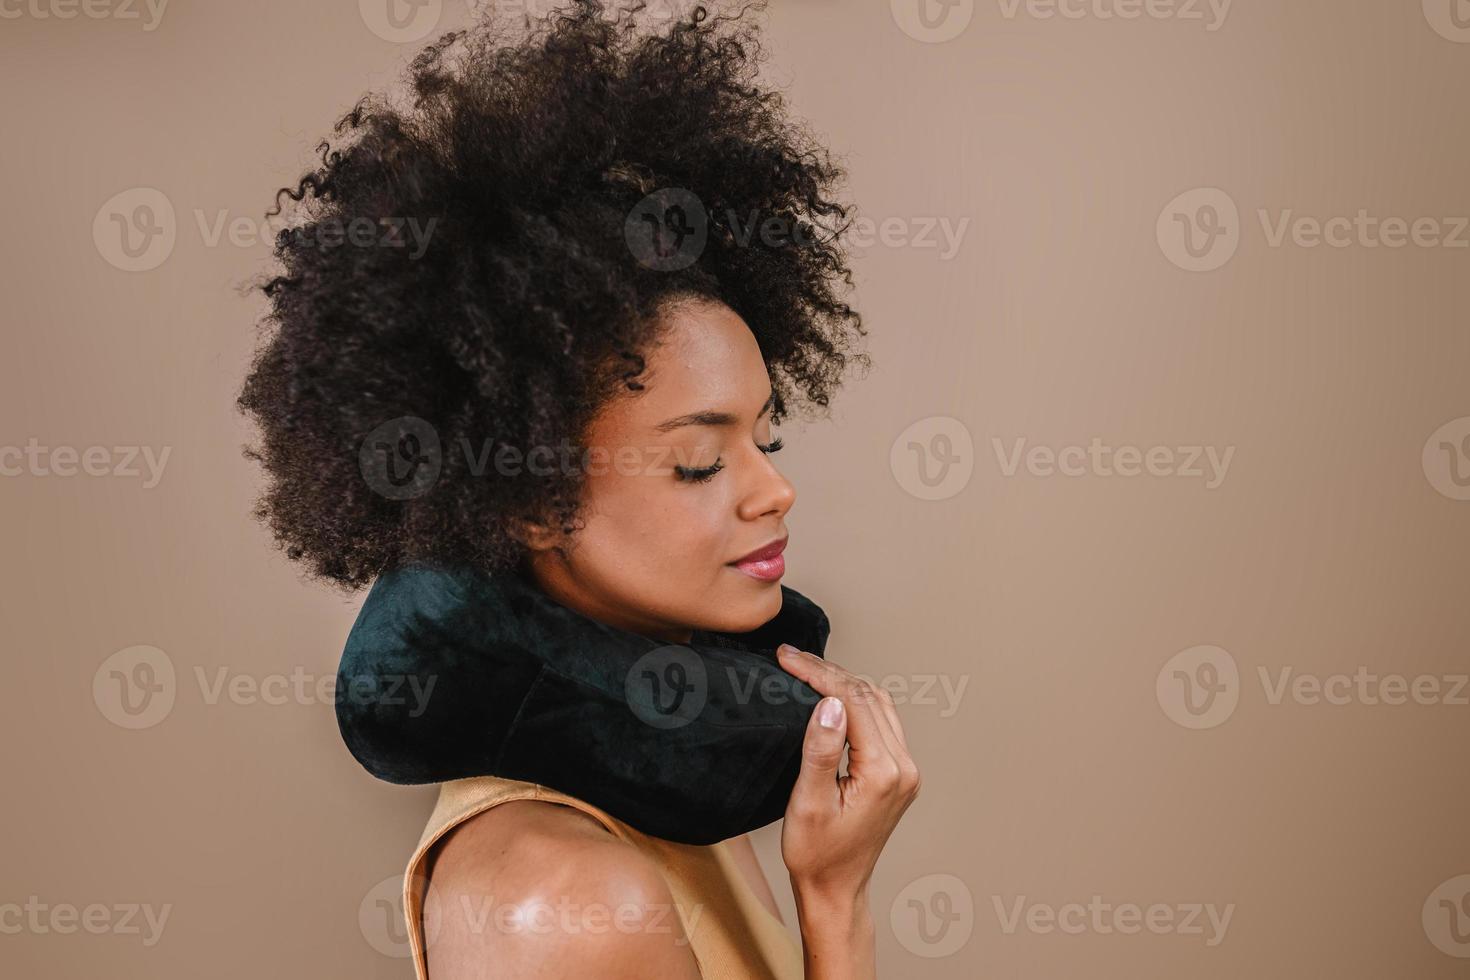 jonge knappe latijnse vrouw kussen nek reizen naar het buitenland vlucht comfort geïsoleerd over pastel bruine kleur achtergrond foto